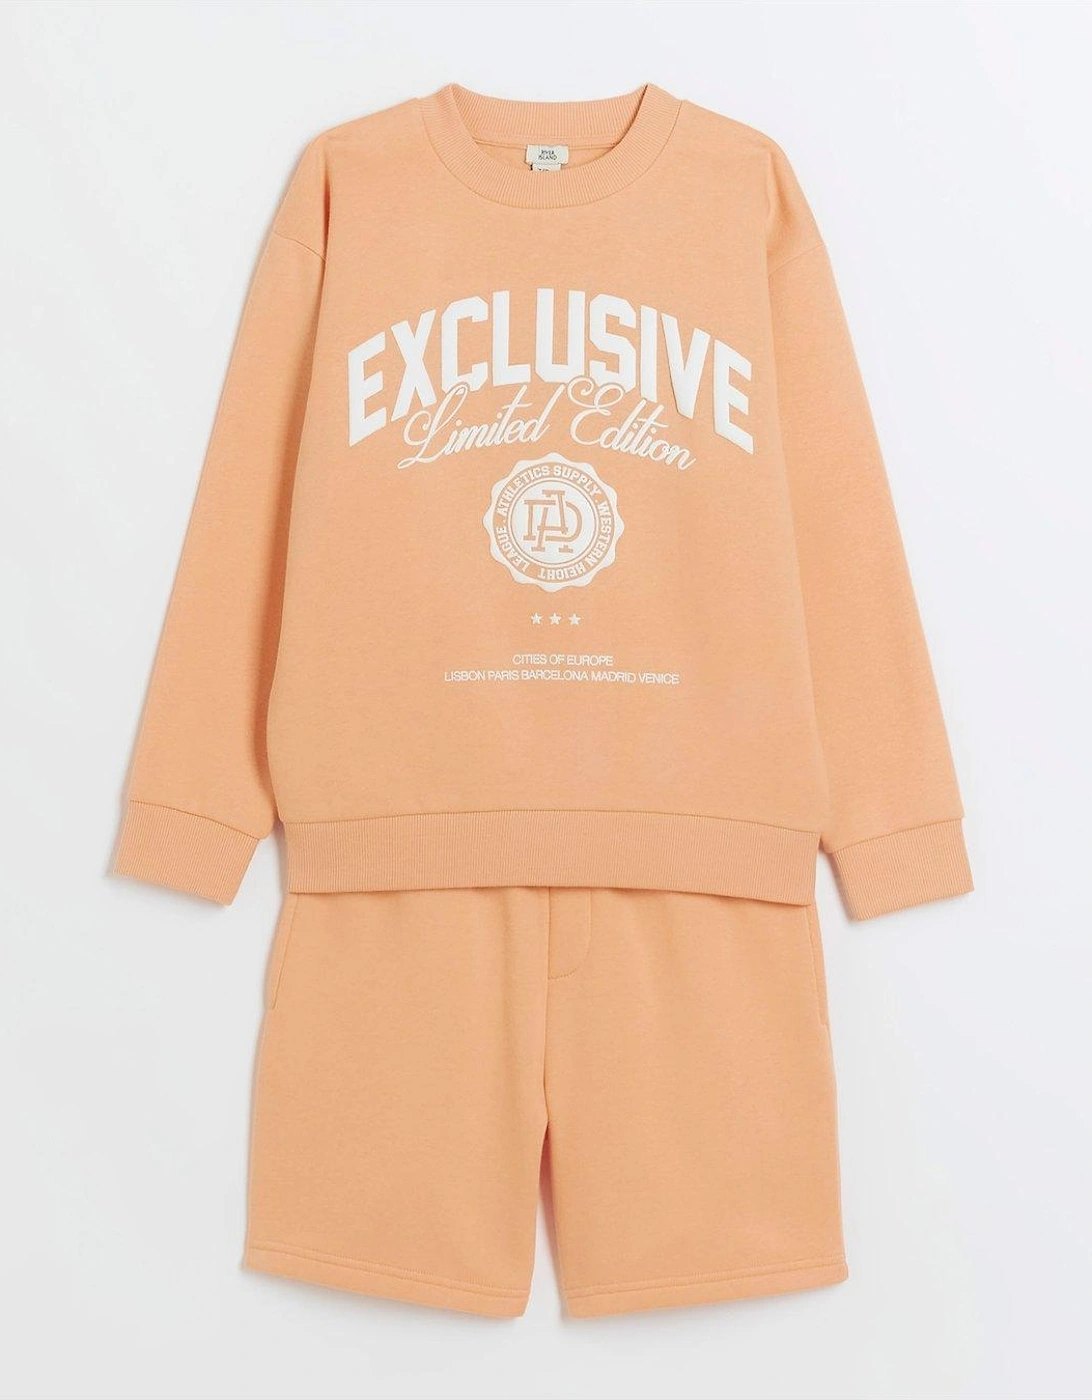 Boys Graphic Sweatshirt and Shorts Set - Orange